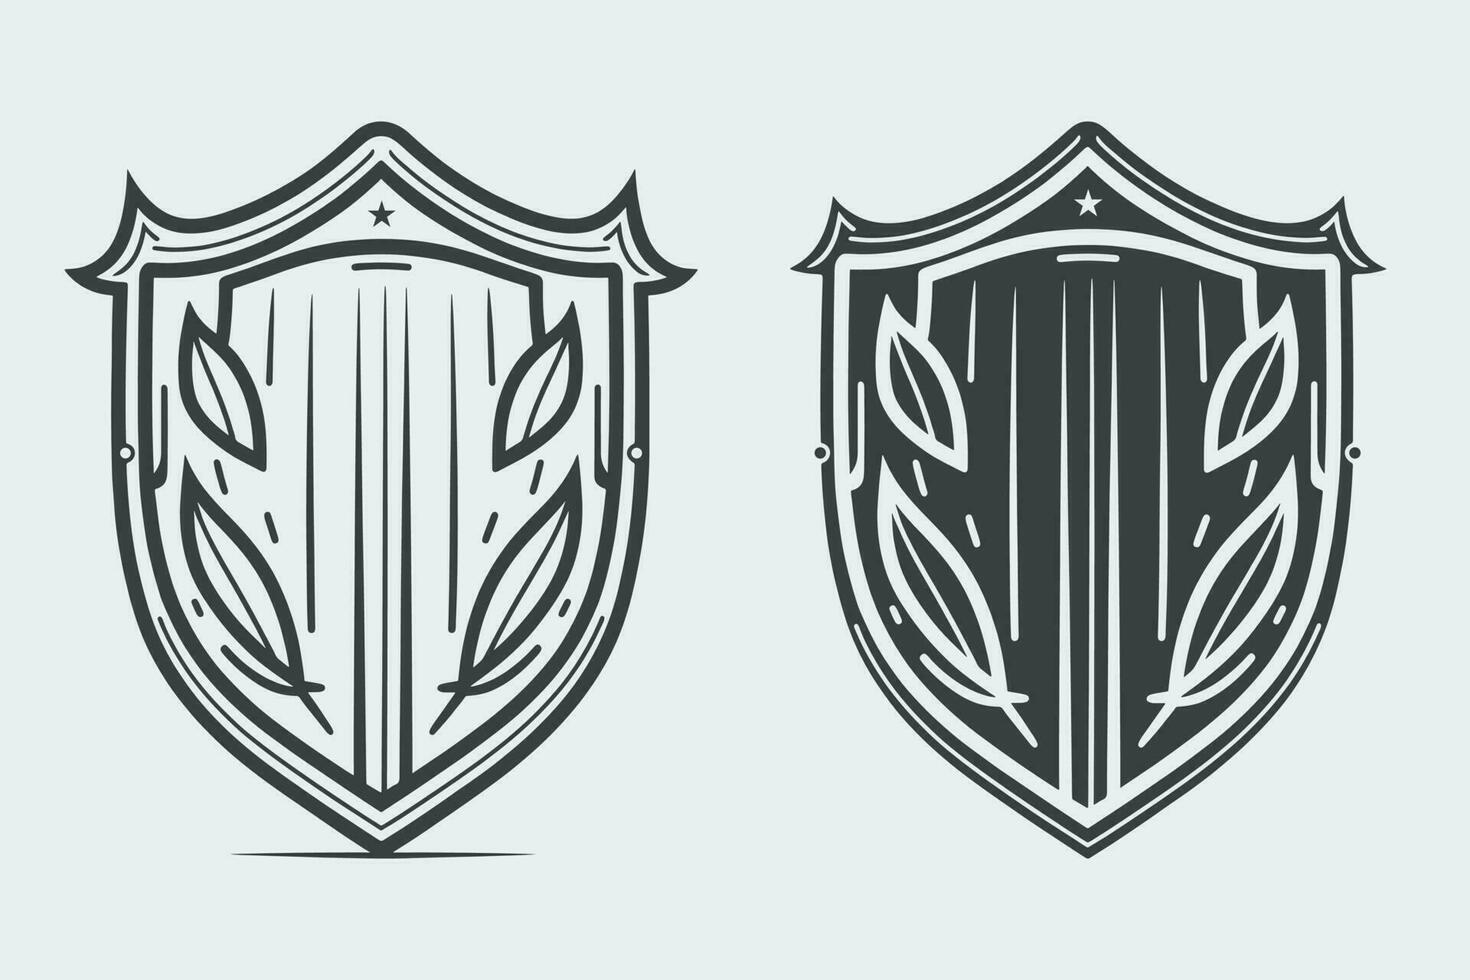 escudo vetor, escudo esboço estilo linha arte, medieval escudo, real escudo, heráldico escudo, heráldico ornamental escudos coleção vetor